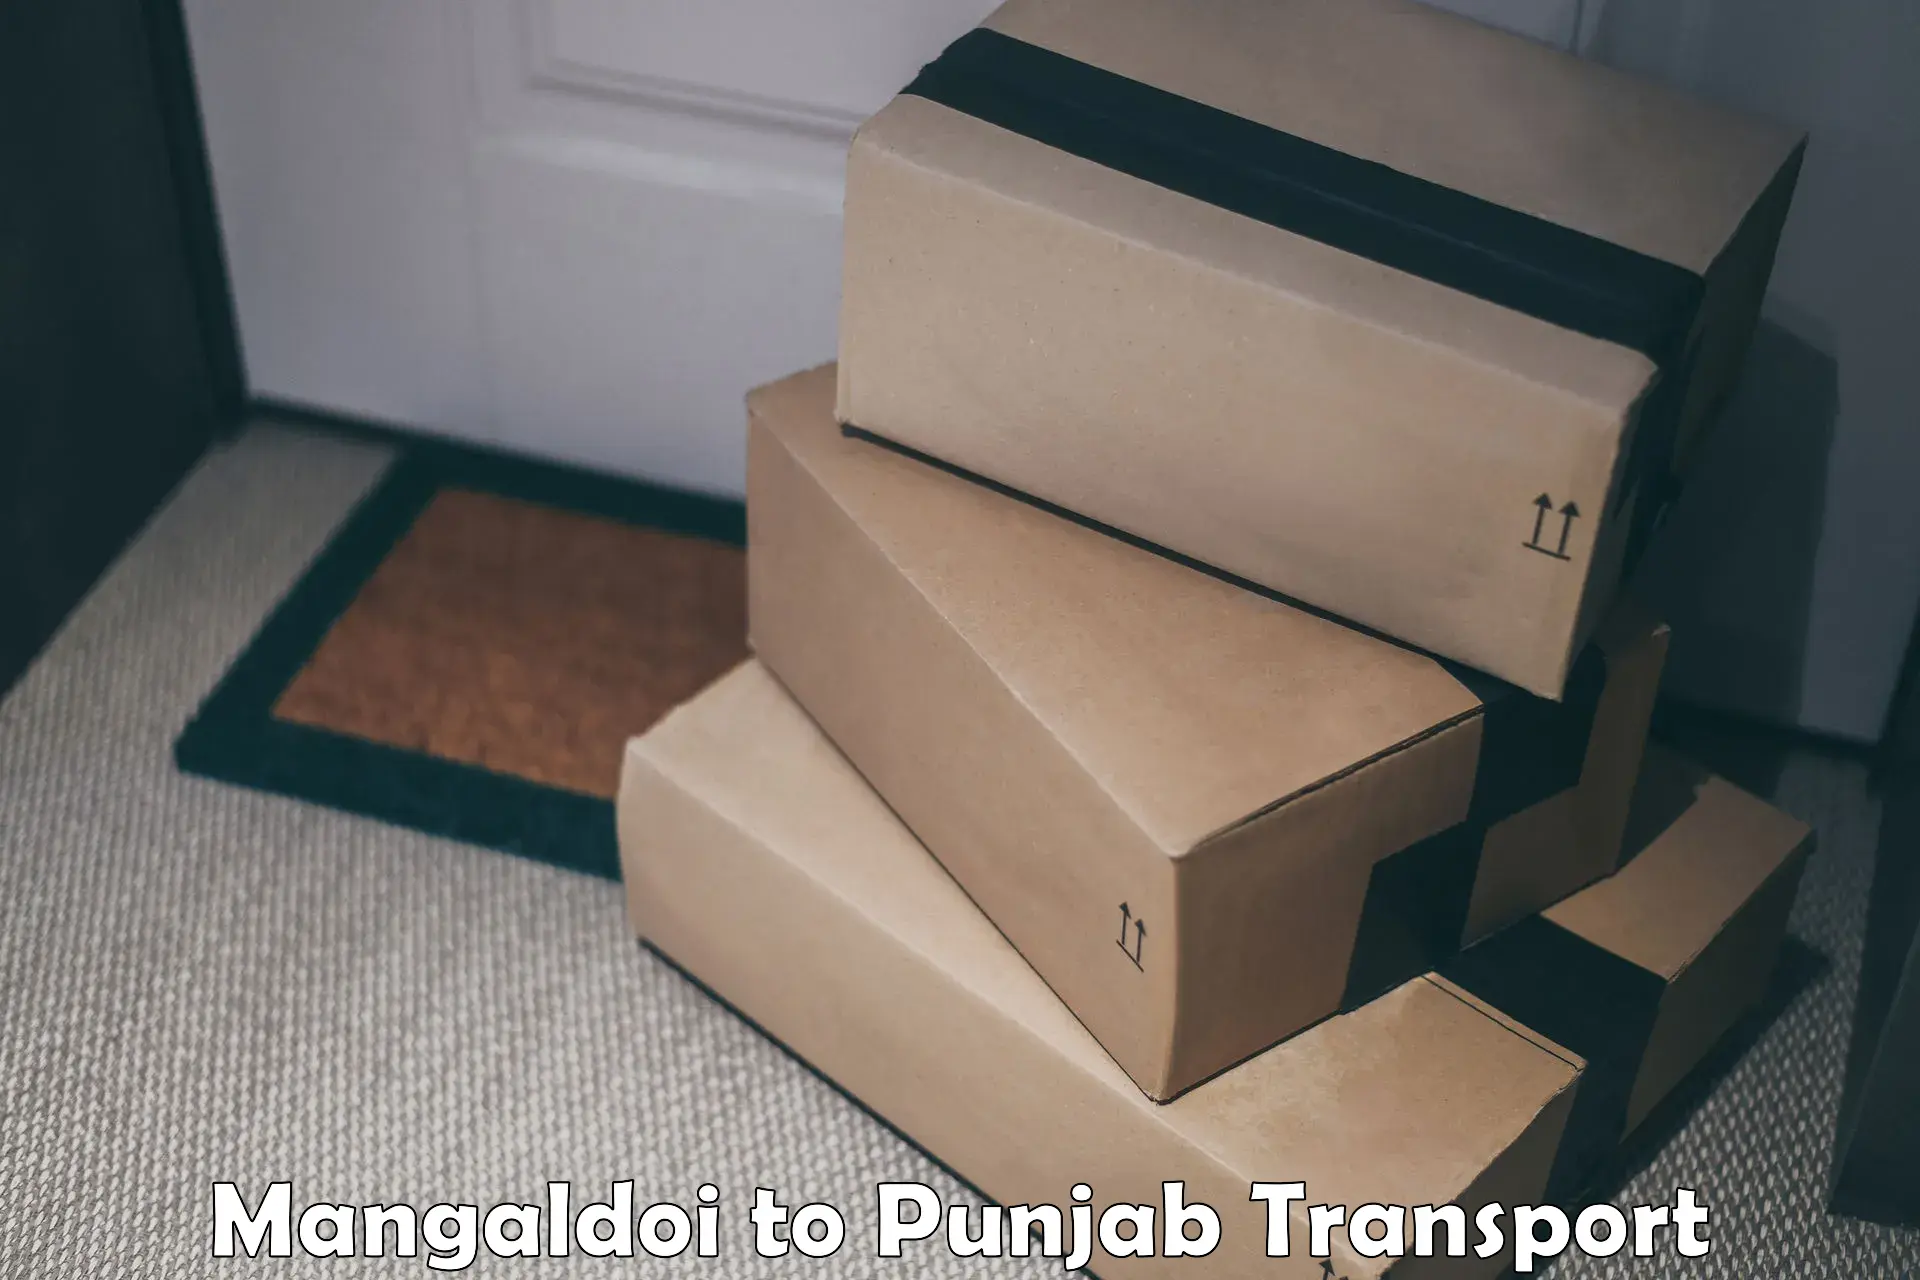 Furniture transport service Mangaldoi to Hoshiarpur